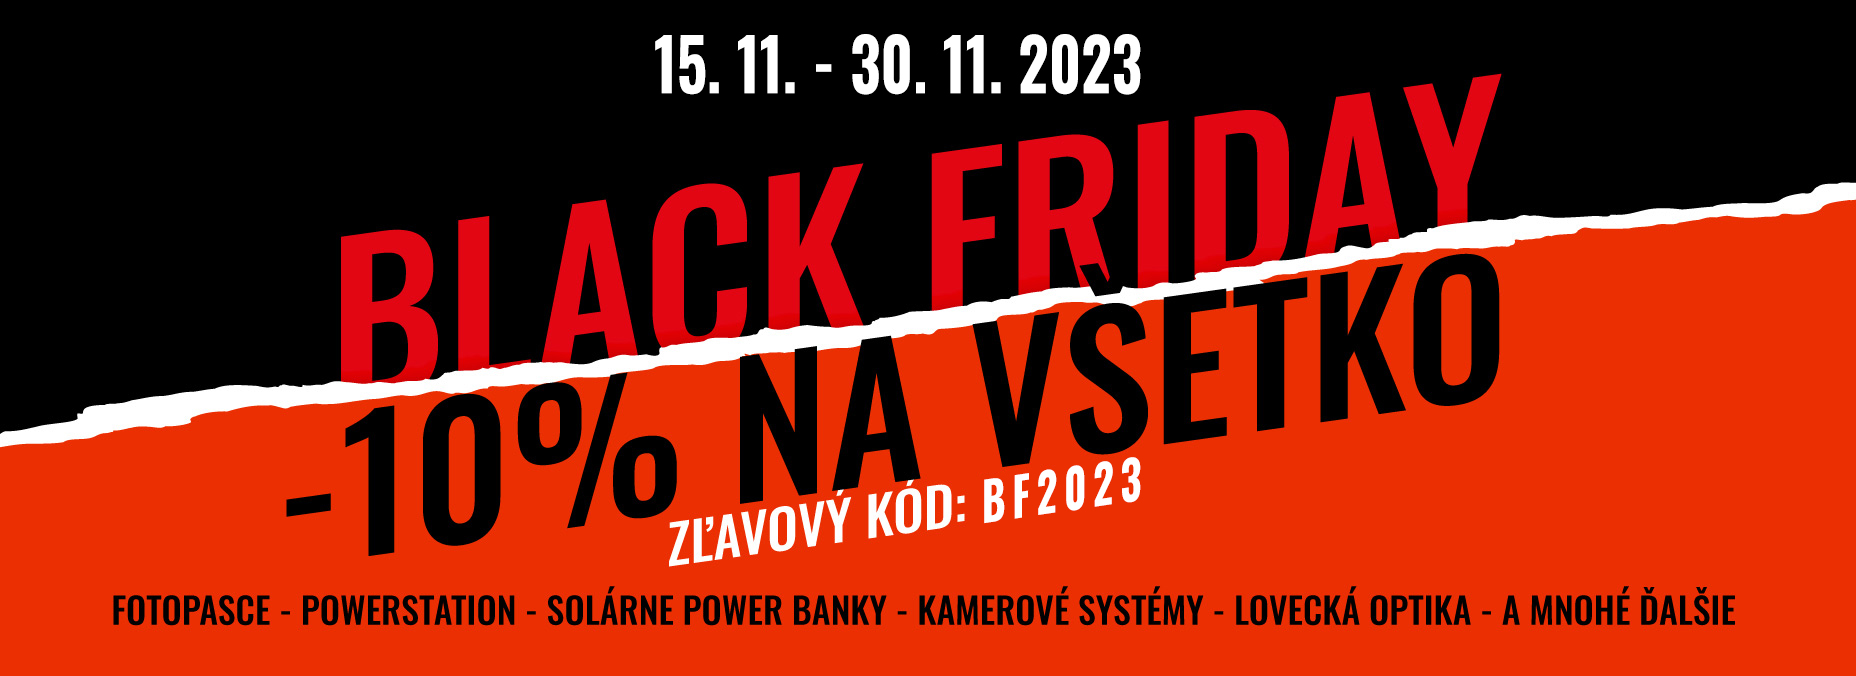 Black Friday 2023 SK